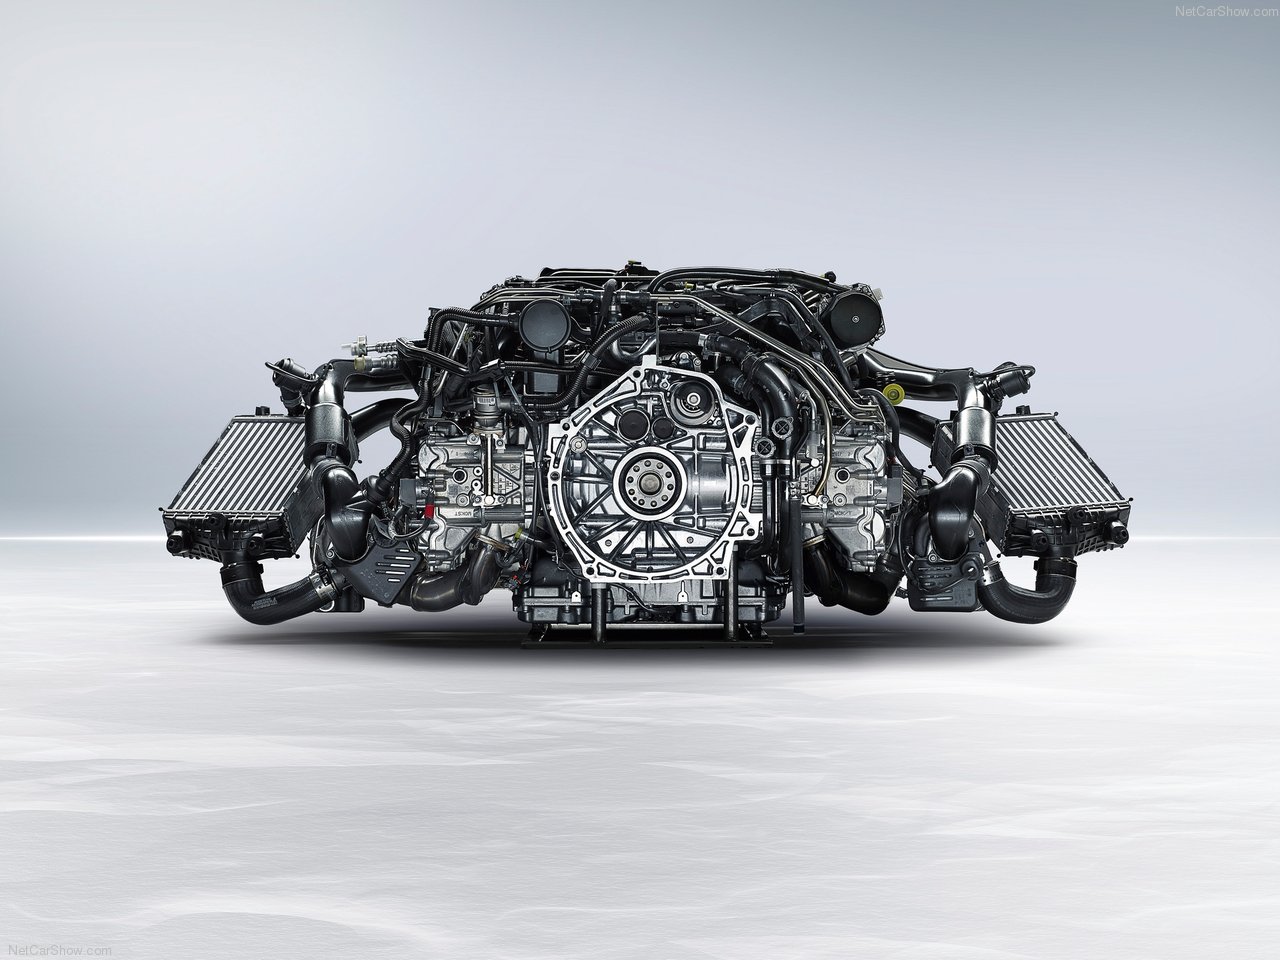 Porsche 911 turbo s engine